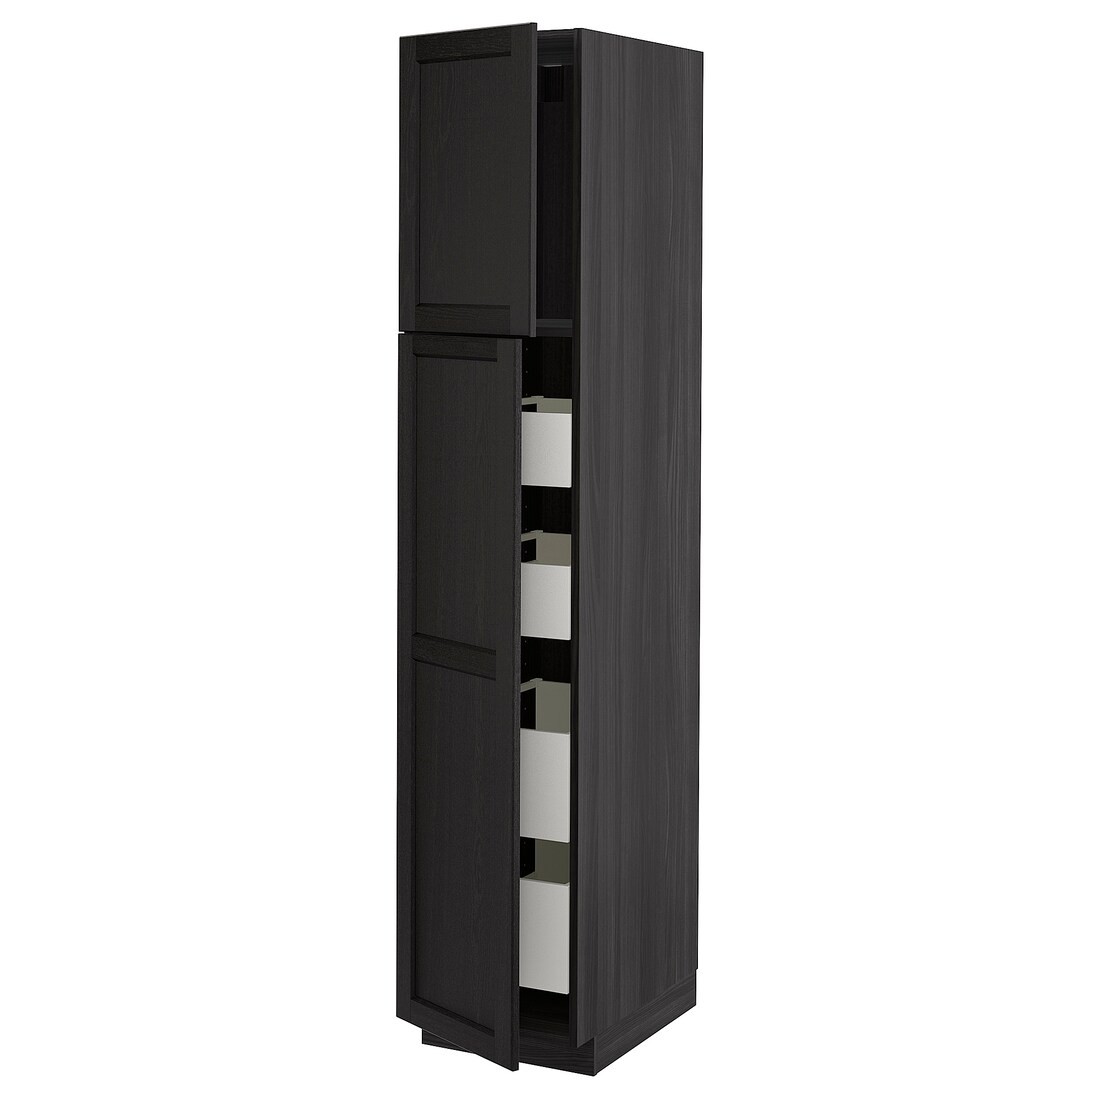 IKEA METOD МЕТОД / MAXIMERA МАКСИМЕРА Шкаф высокий 2 двери / 4 ящика, черный / Lerhyttan черная морилка, 40x60x200 см 19462091 | 194.620.91